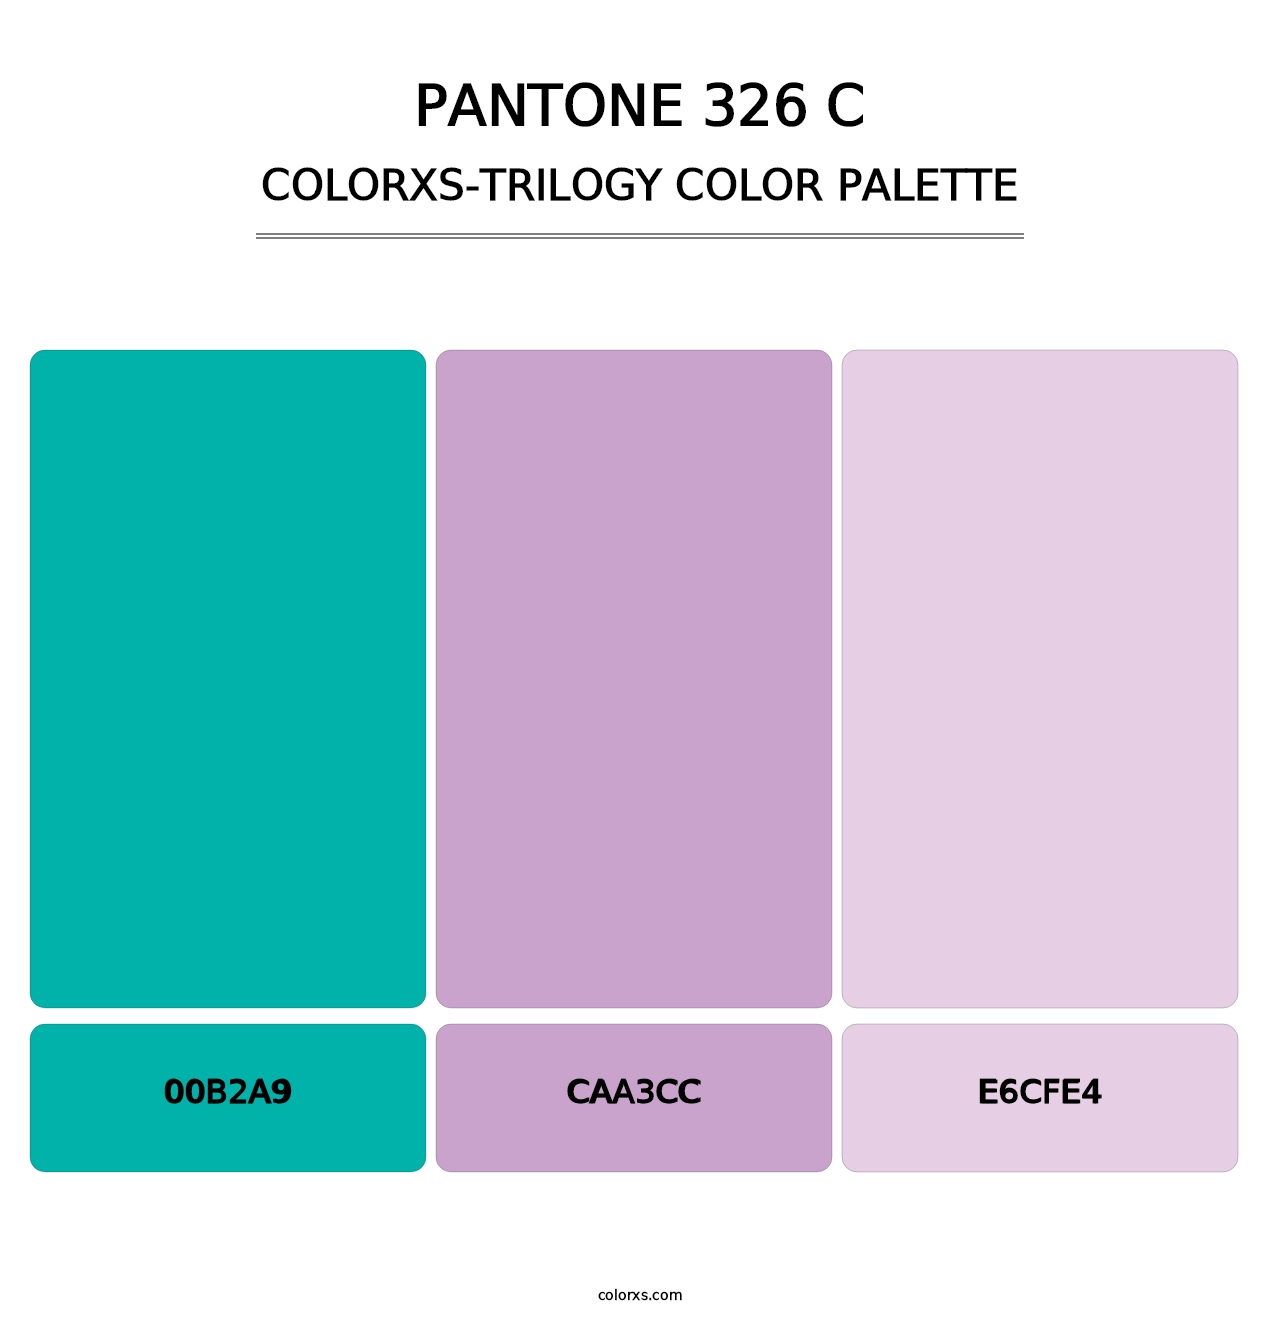 PANTONE 326 C - Colorxs Trilogy Palette